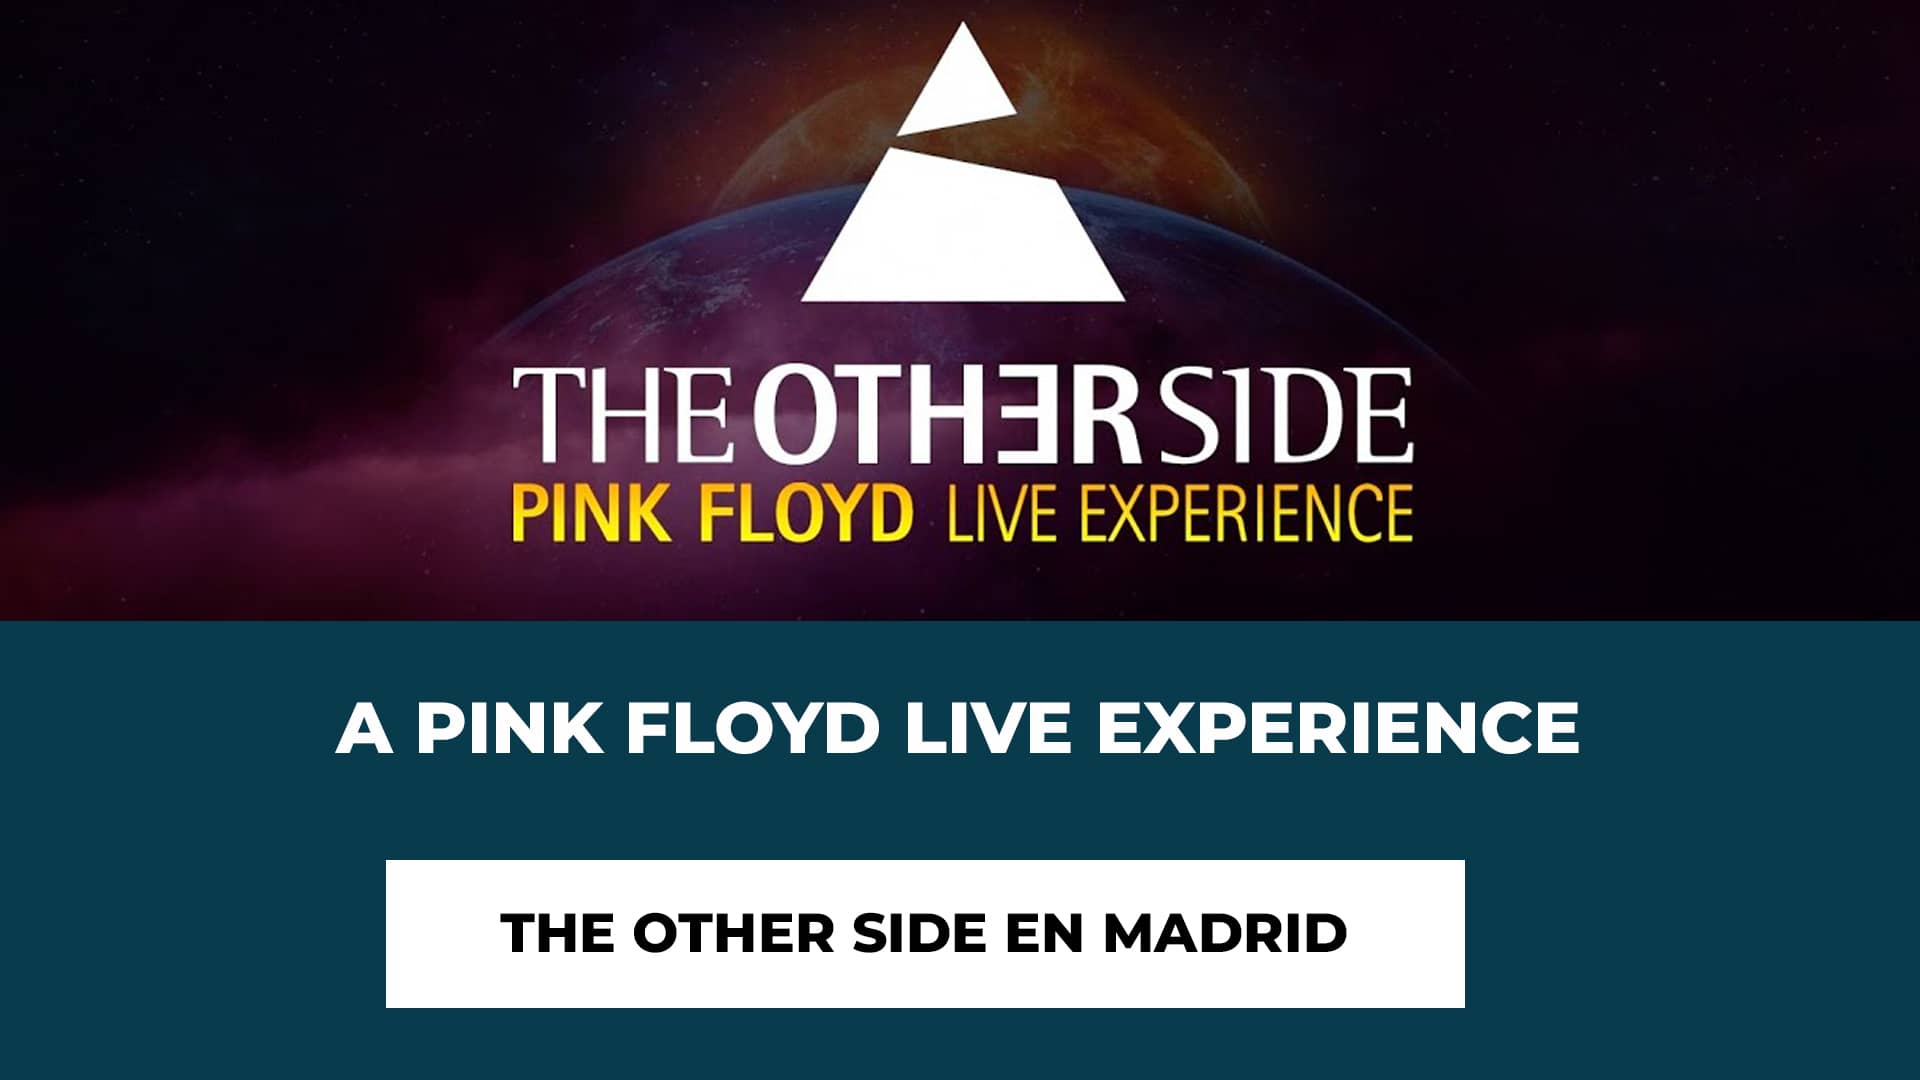 A Pink Floyd Live Experience: The Other Side en Madrid - Horario - Fechas - Ubicación - Sobre "The Other Side" - Precio de las Entradas